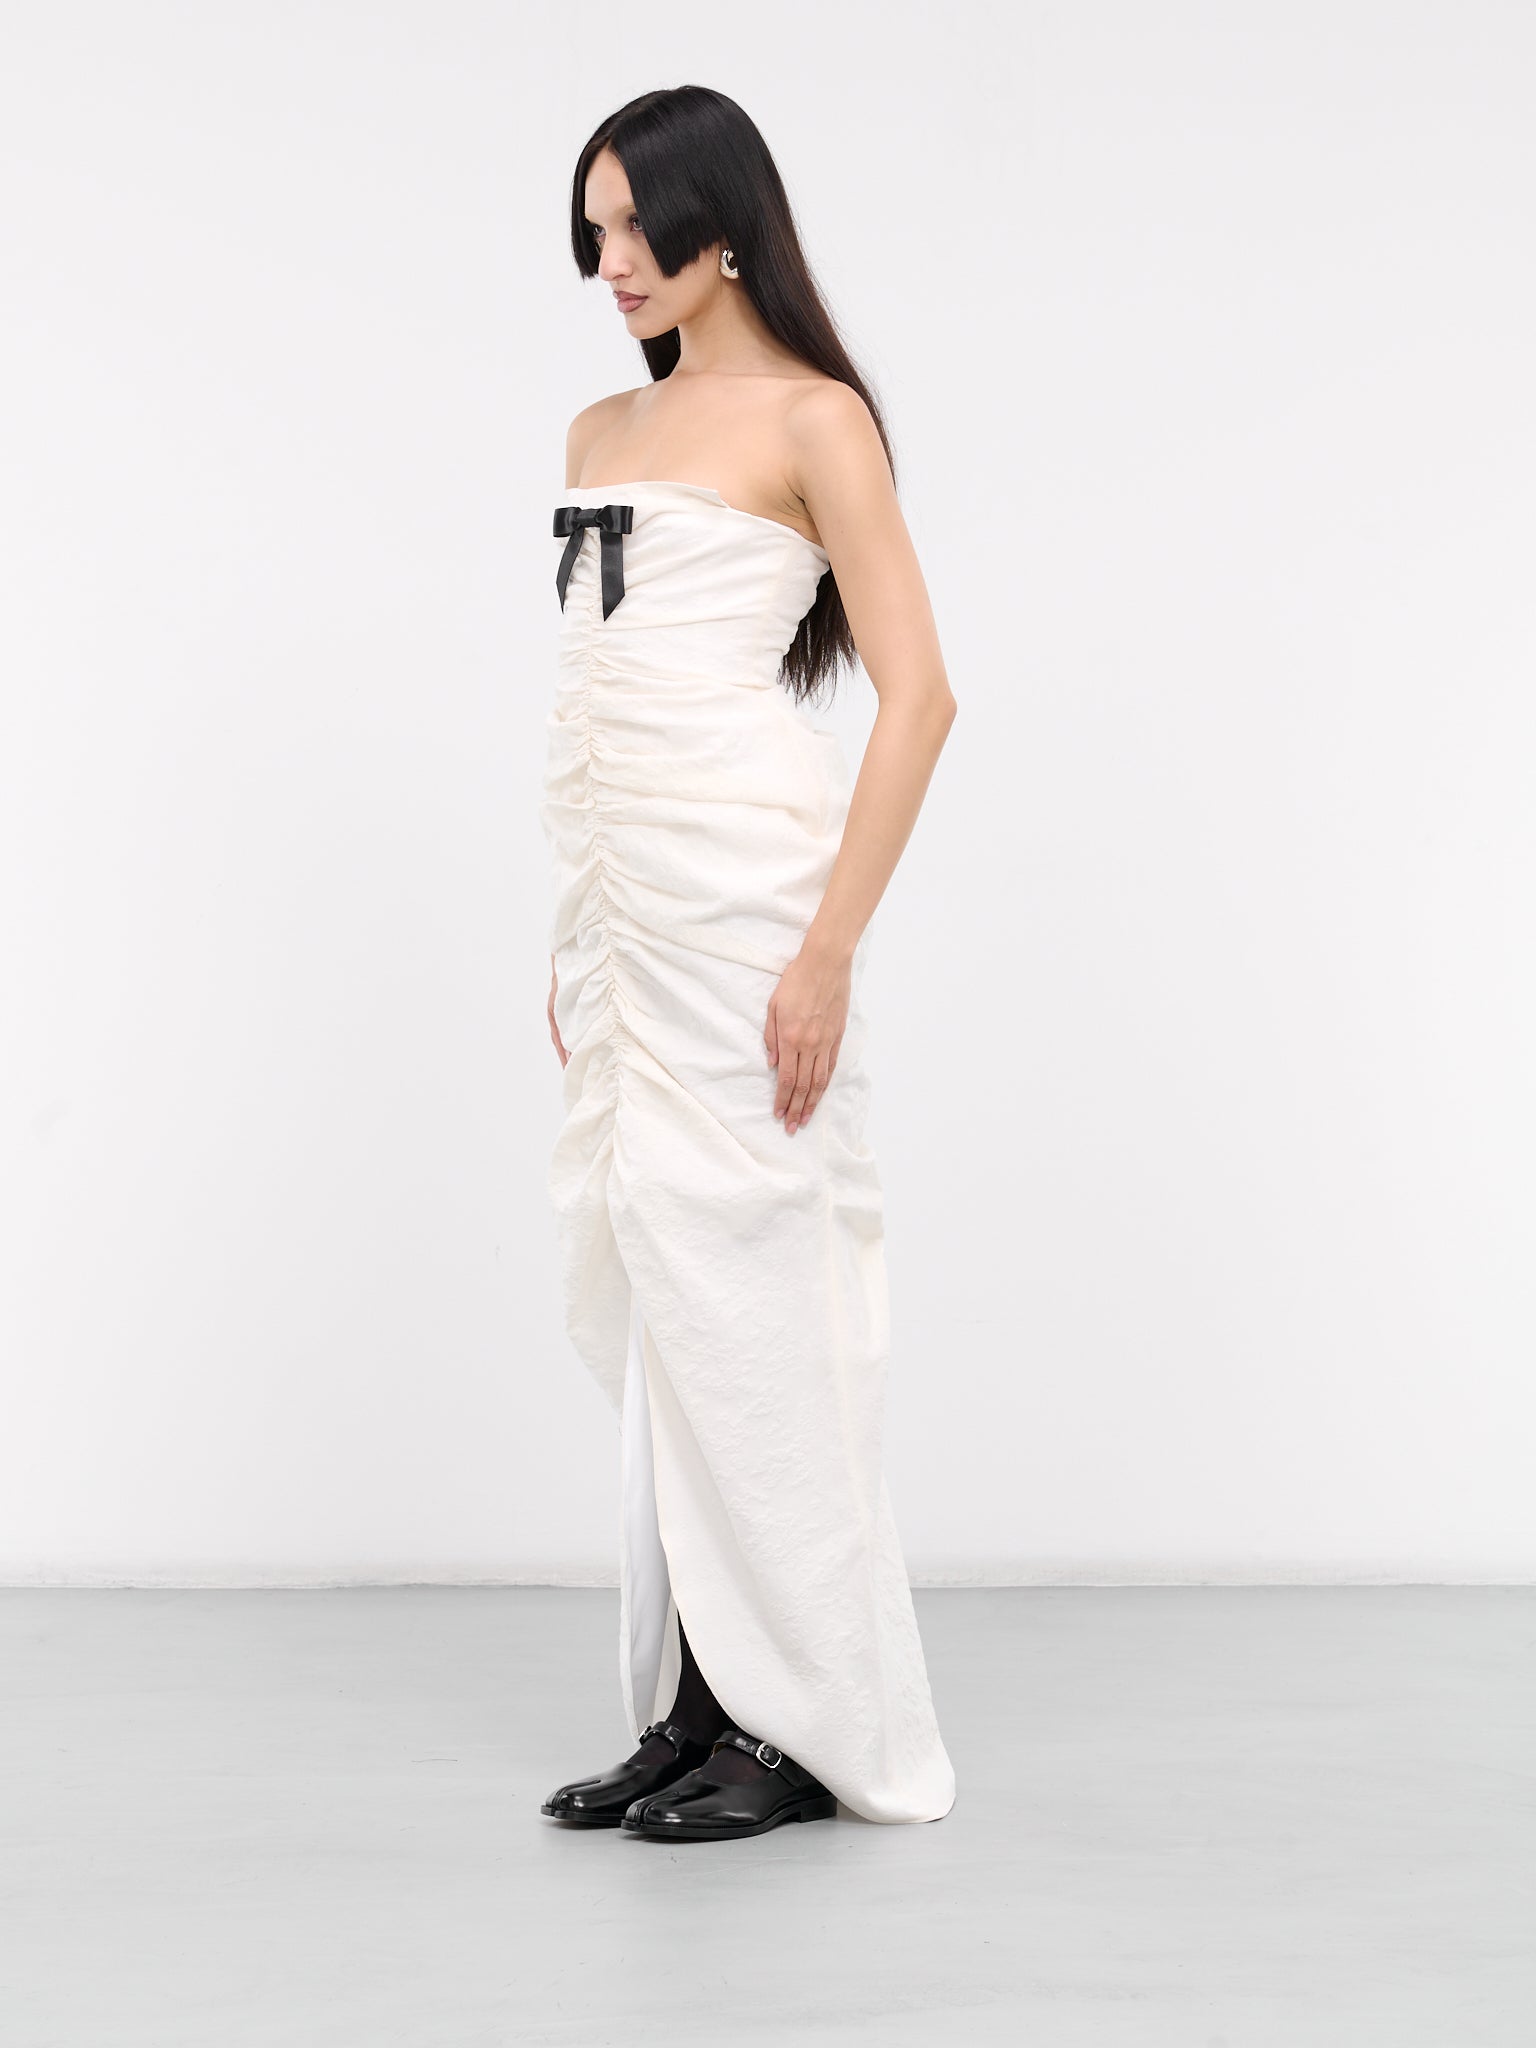 Bow Shirred Long Dress (FSDDDR01-WJF641-WHITE)